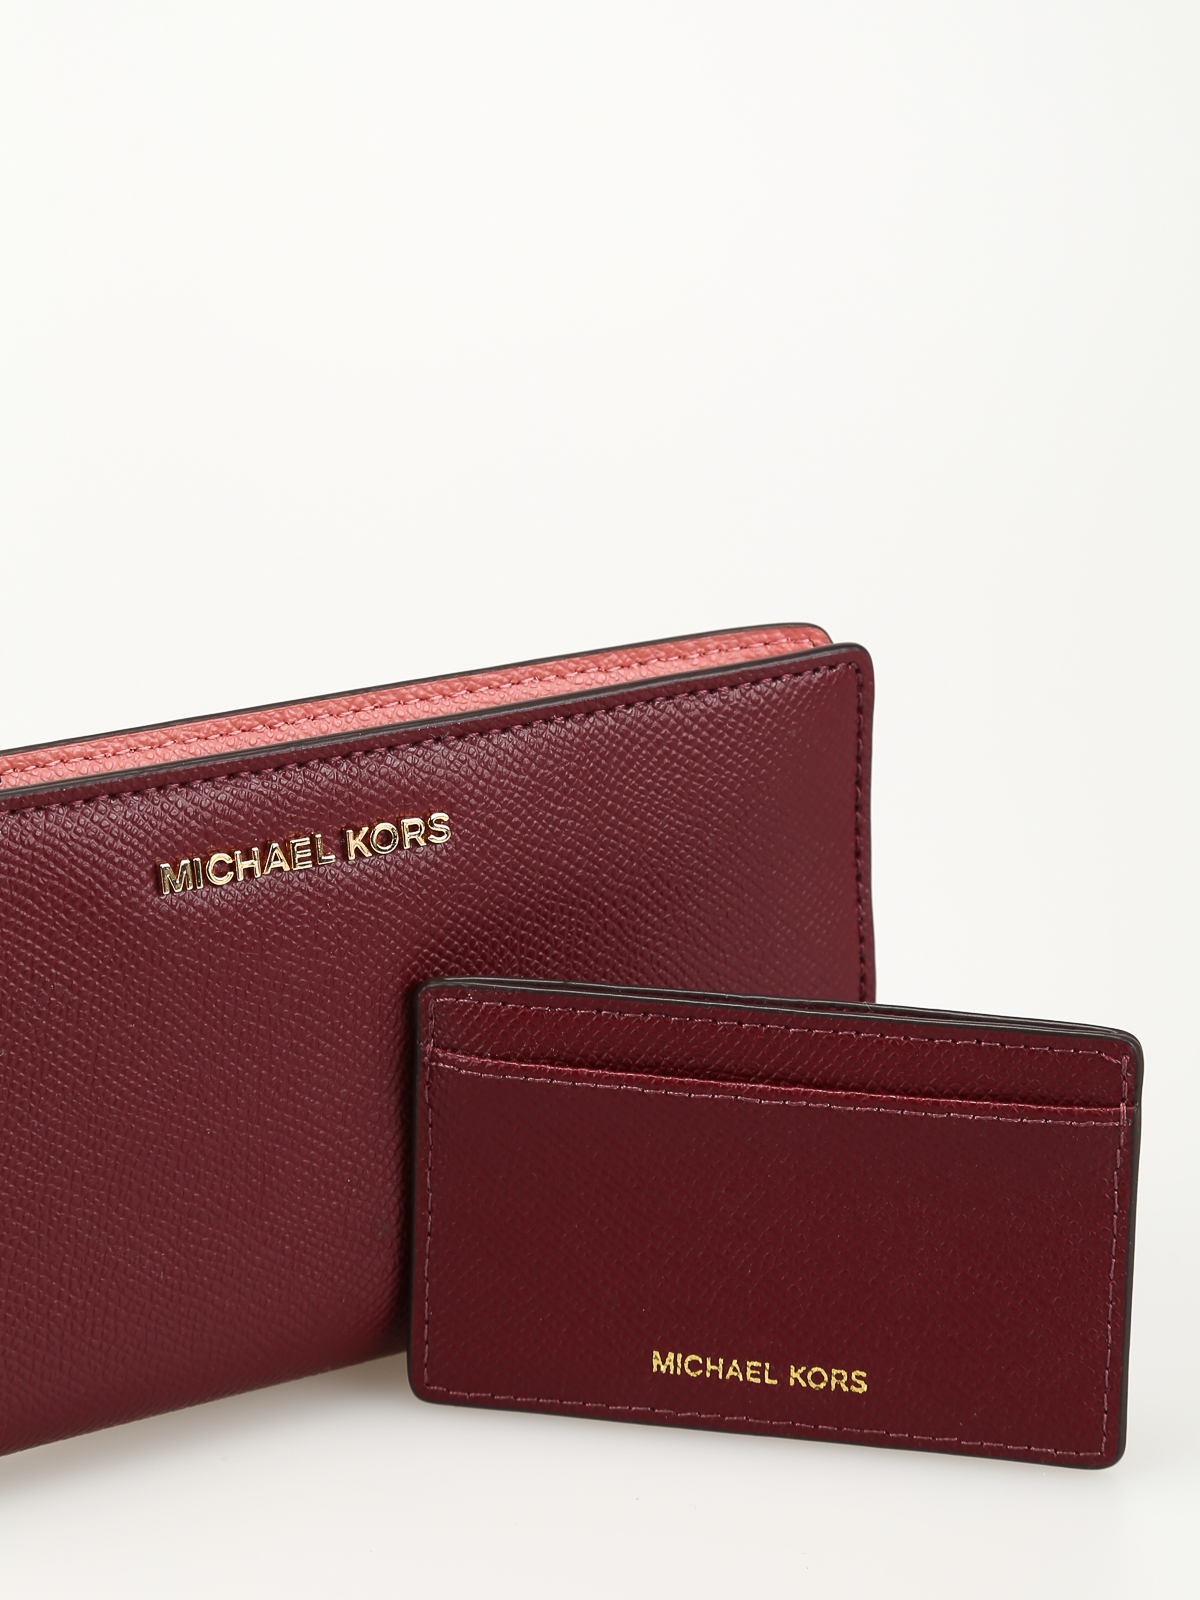 Populær del Ride Wallets & purses Michael Kors - Money Pieces wallet with card holder -  32T8GF6D3T891